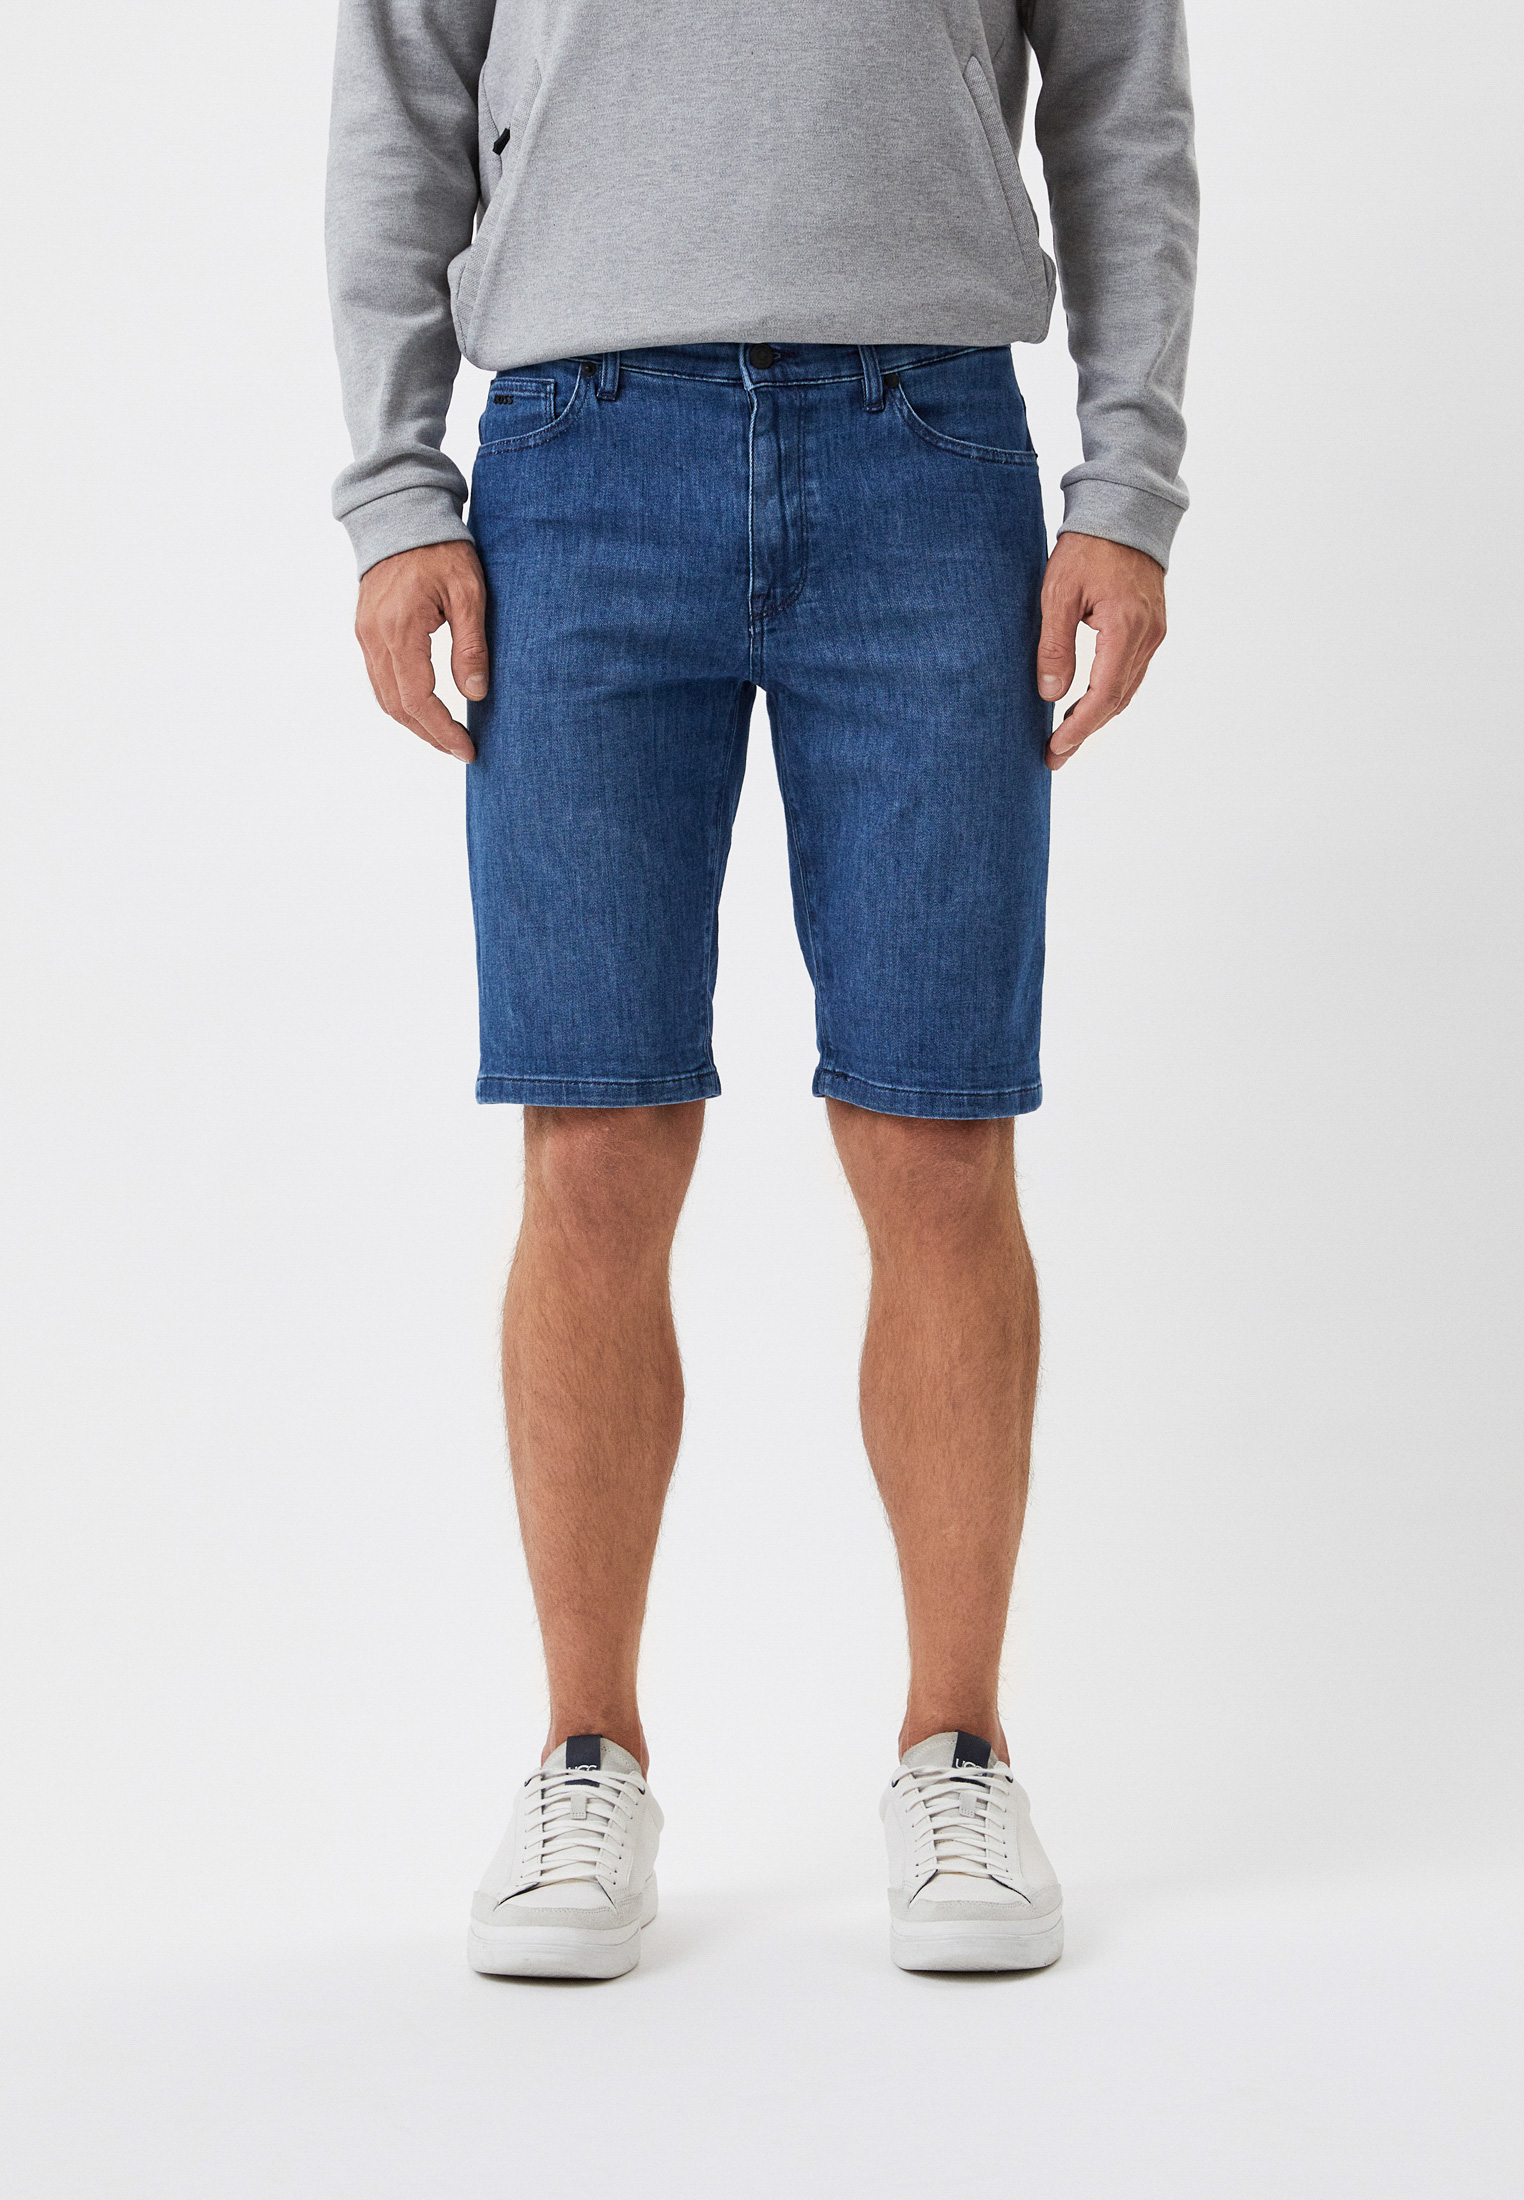 Мужские джинсовые шорты Boss (Босс) 50473122: изображение 1